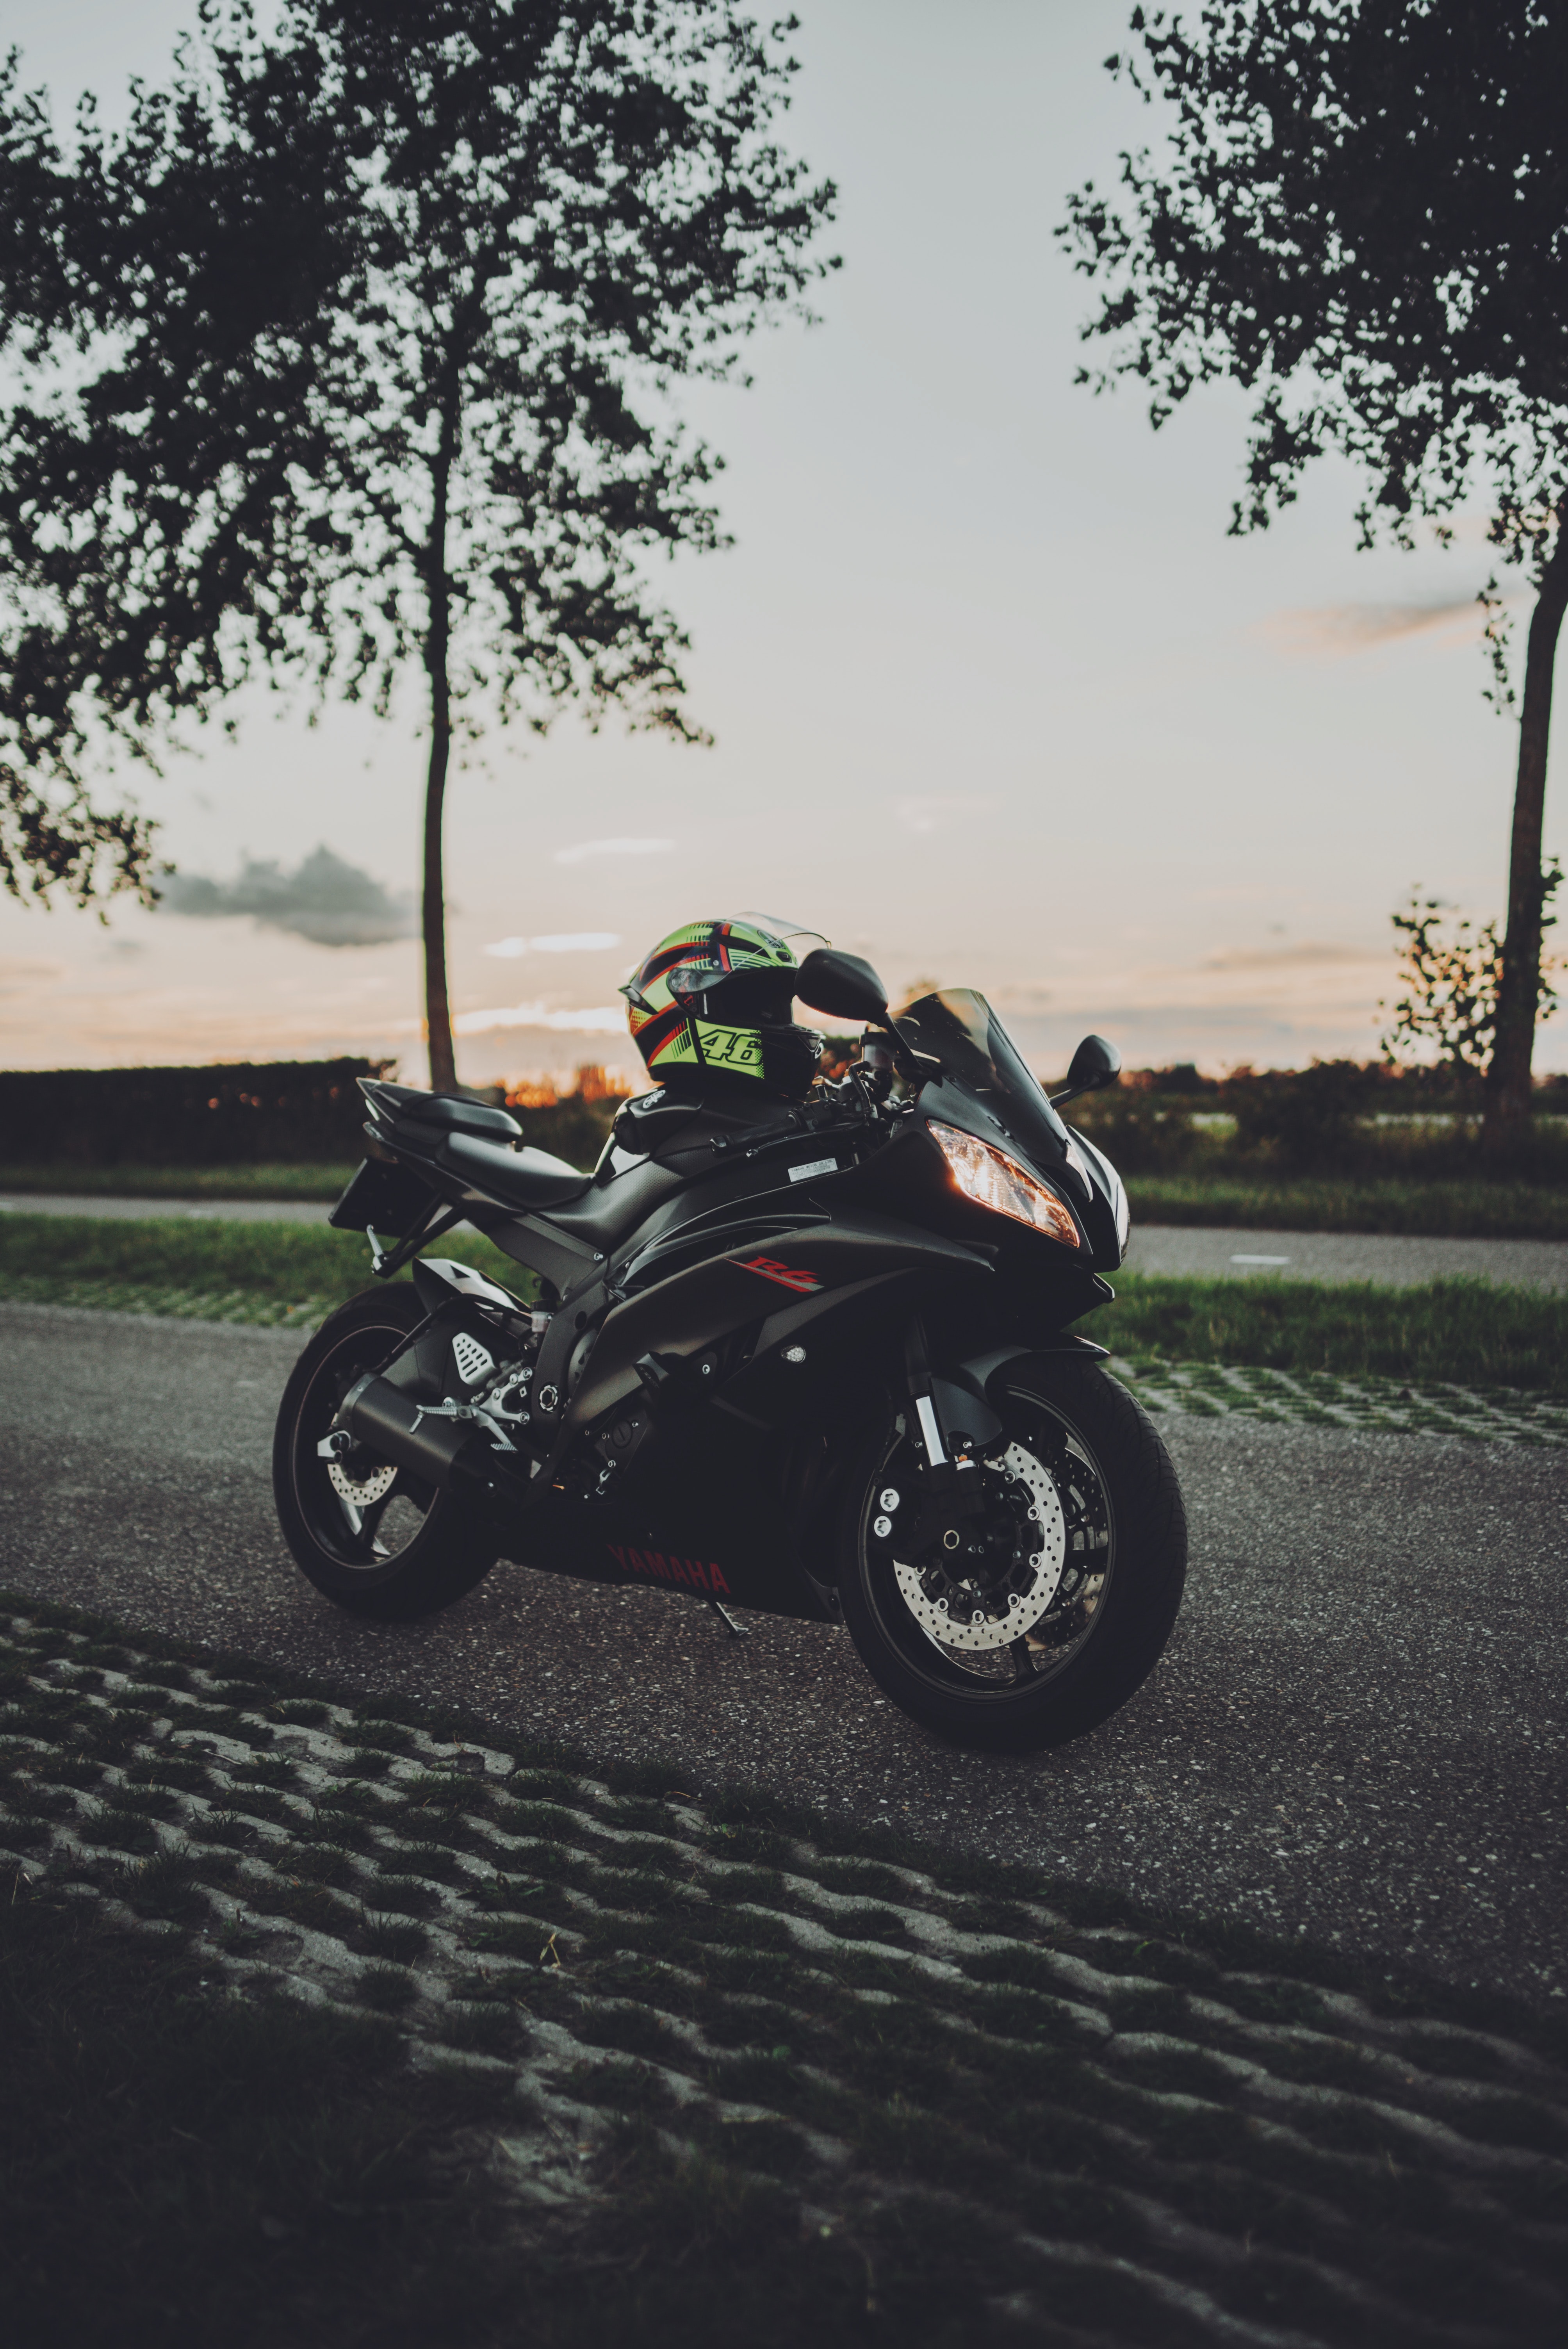 motorcycles, bike, helmet, side view, motorcycle